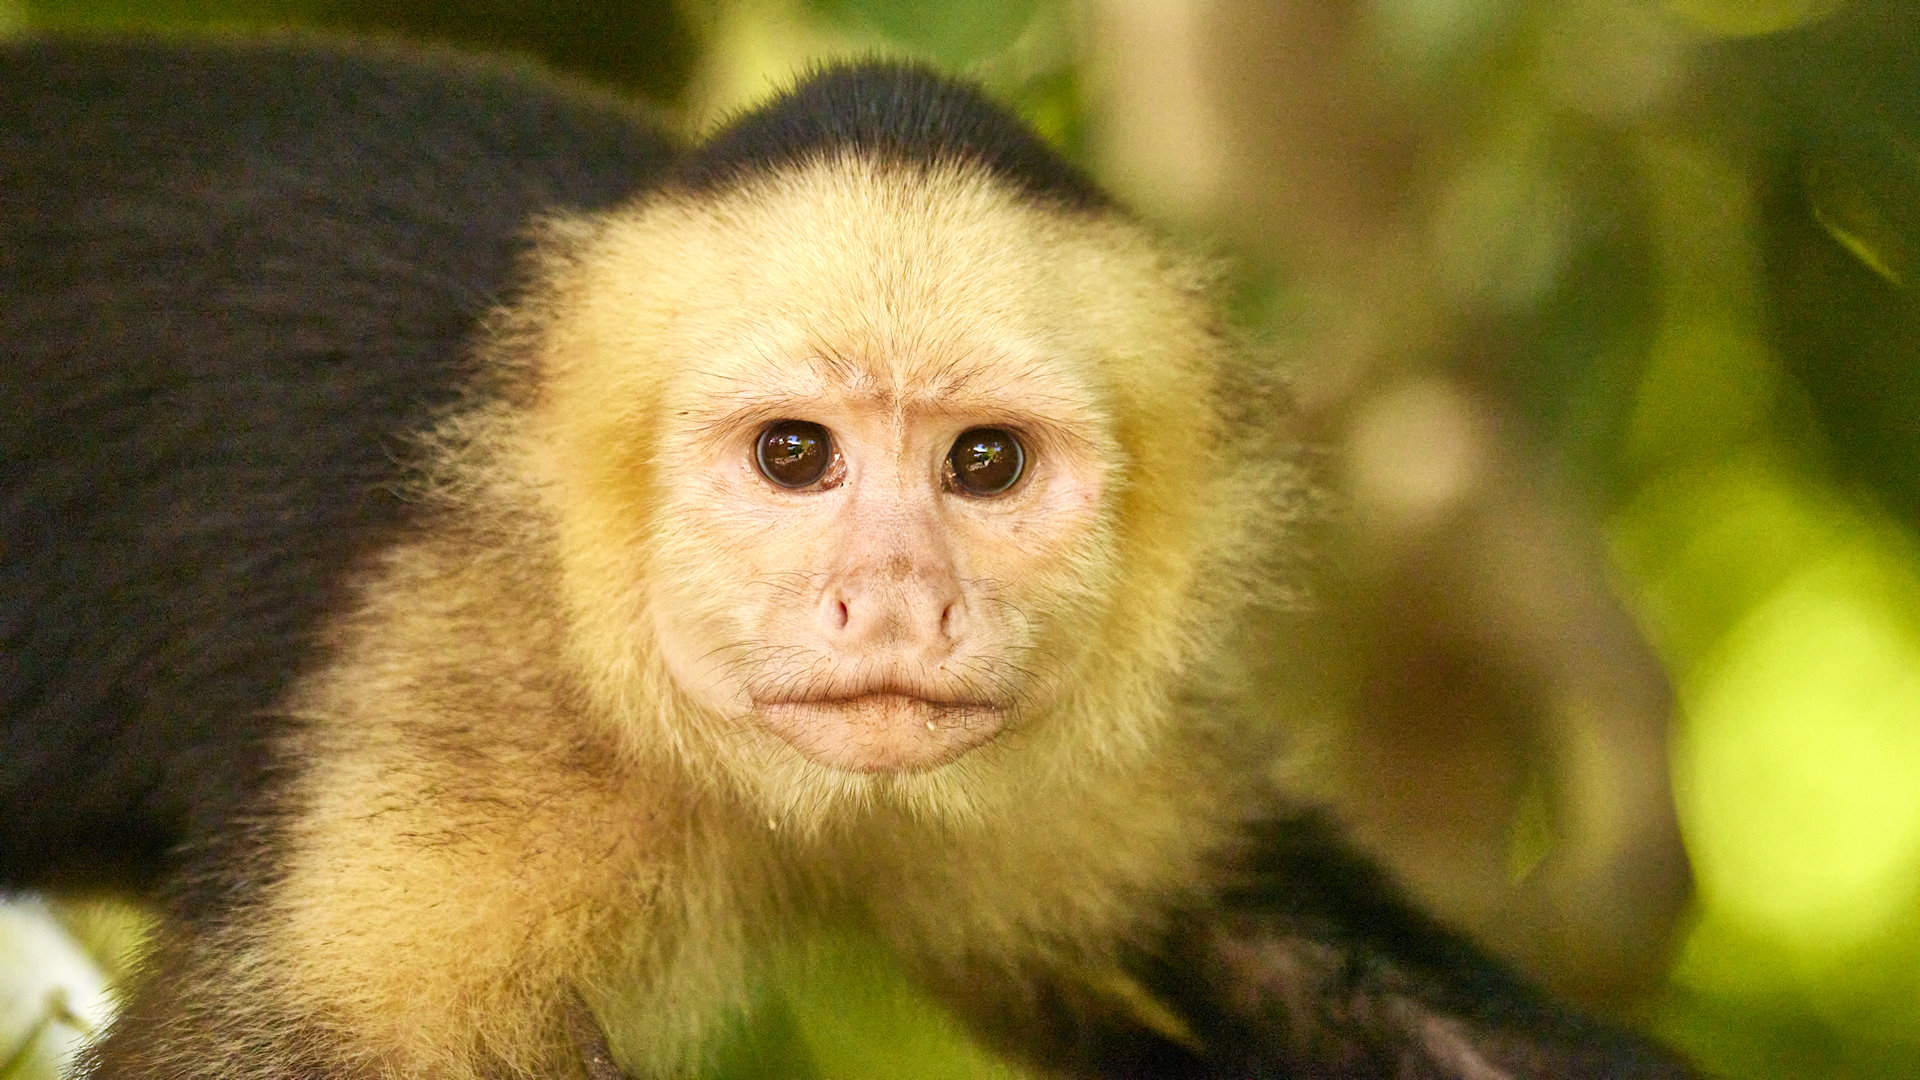 Capuchin monkey looking back - image 10